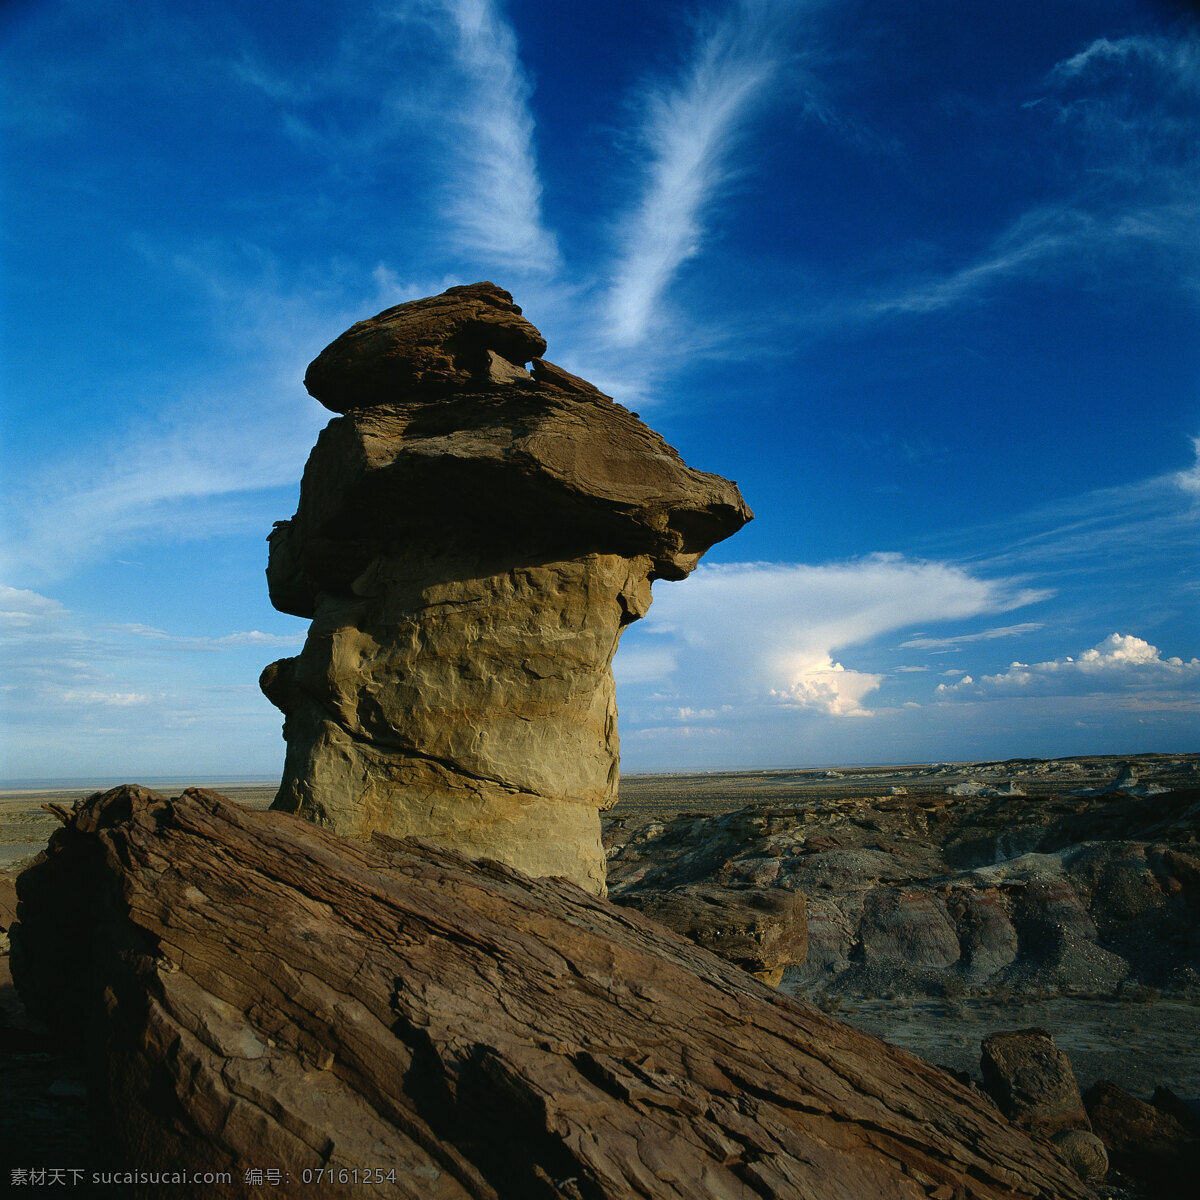 蘑菇石 蘑菇形 石头 风化 山 平原 蓝天 白云 自然景观 自然风景 山川 摄影图库